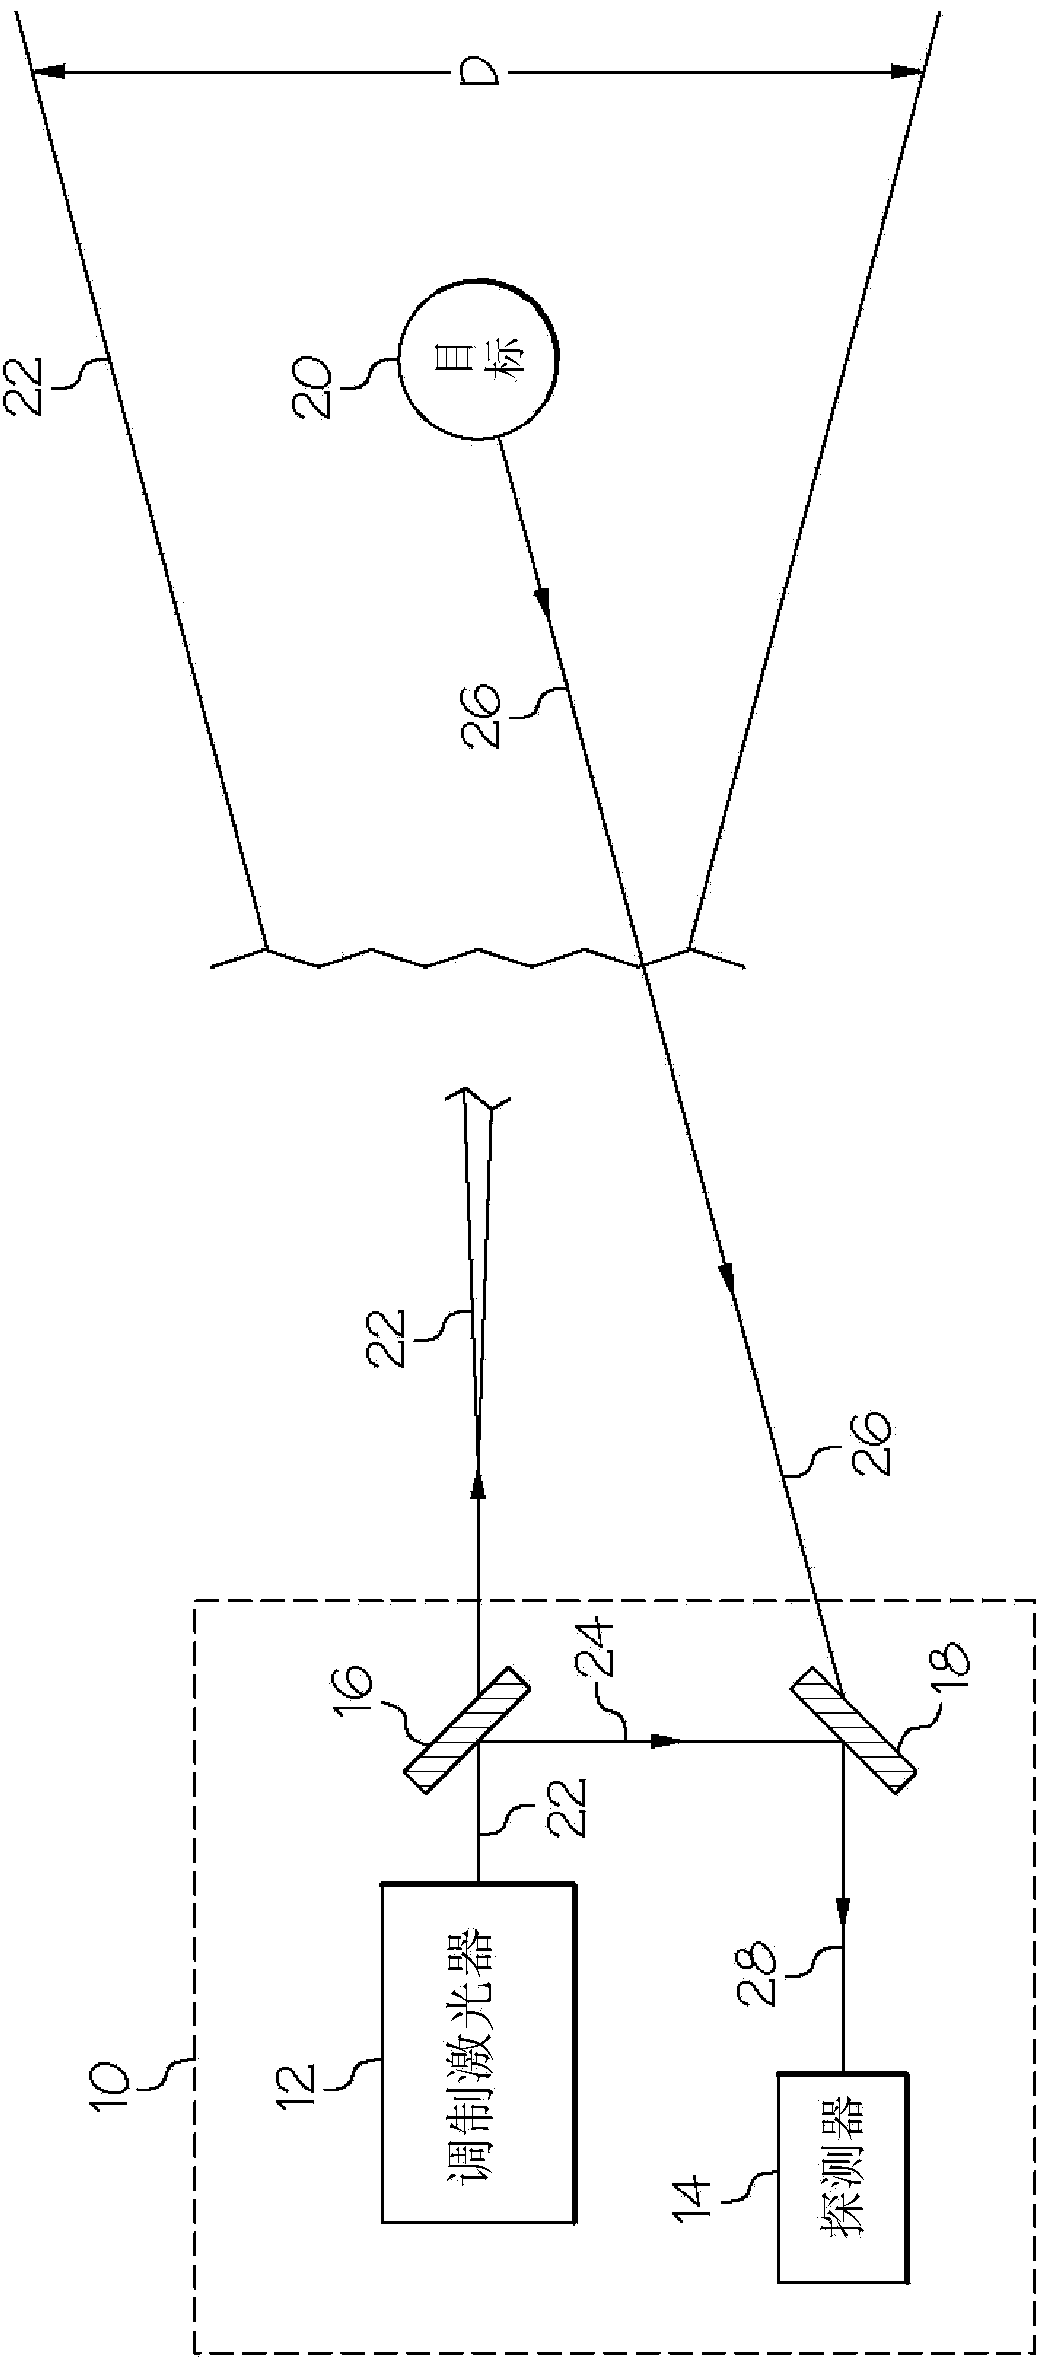 Modulated laser range finder and method